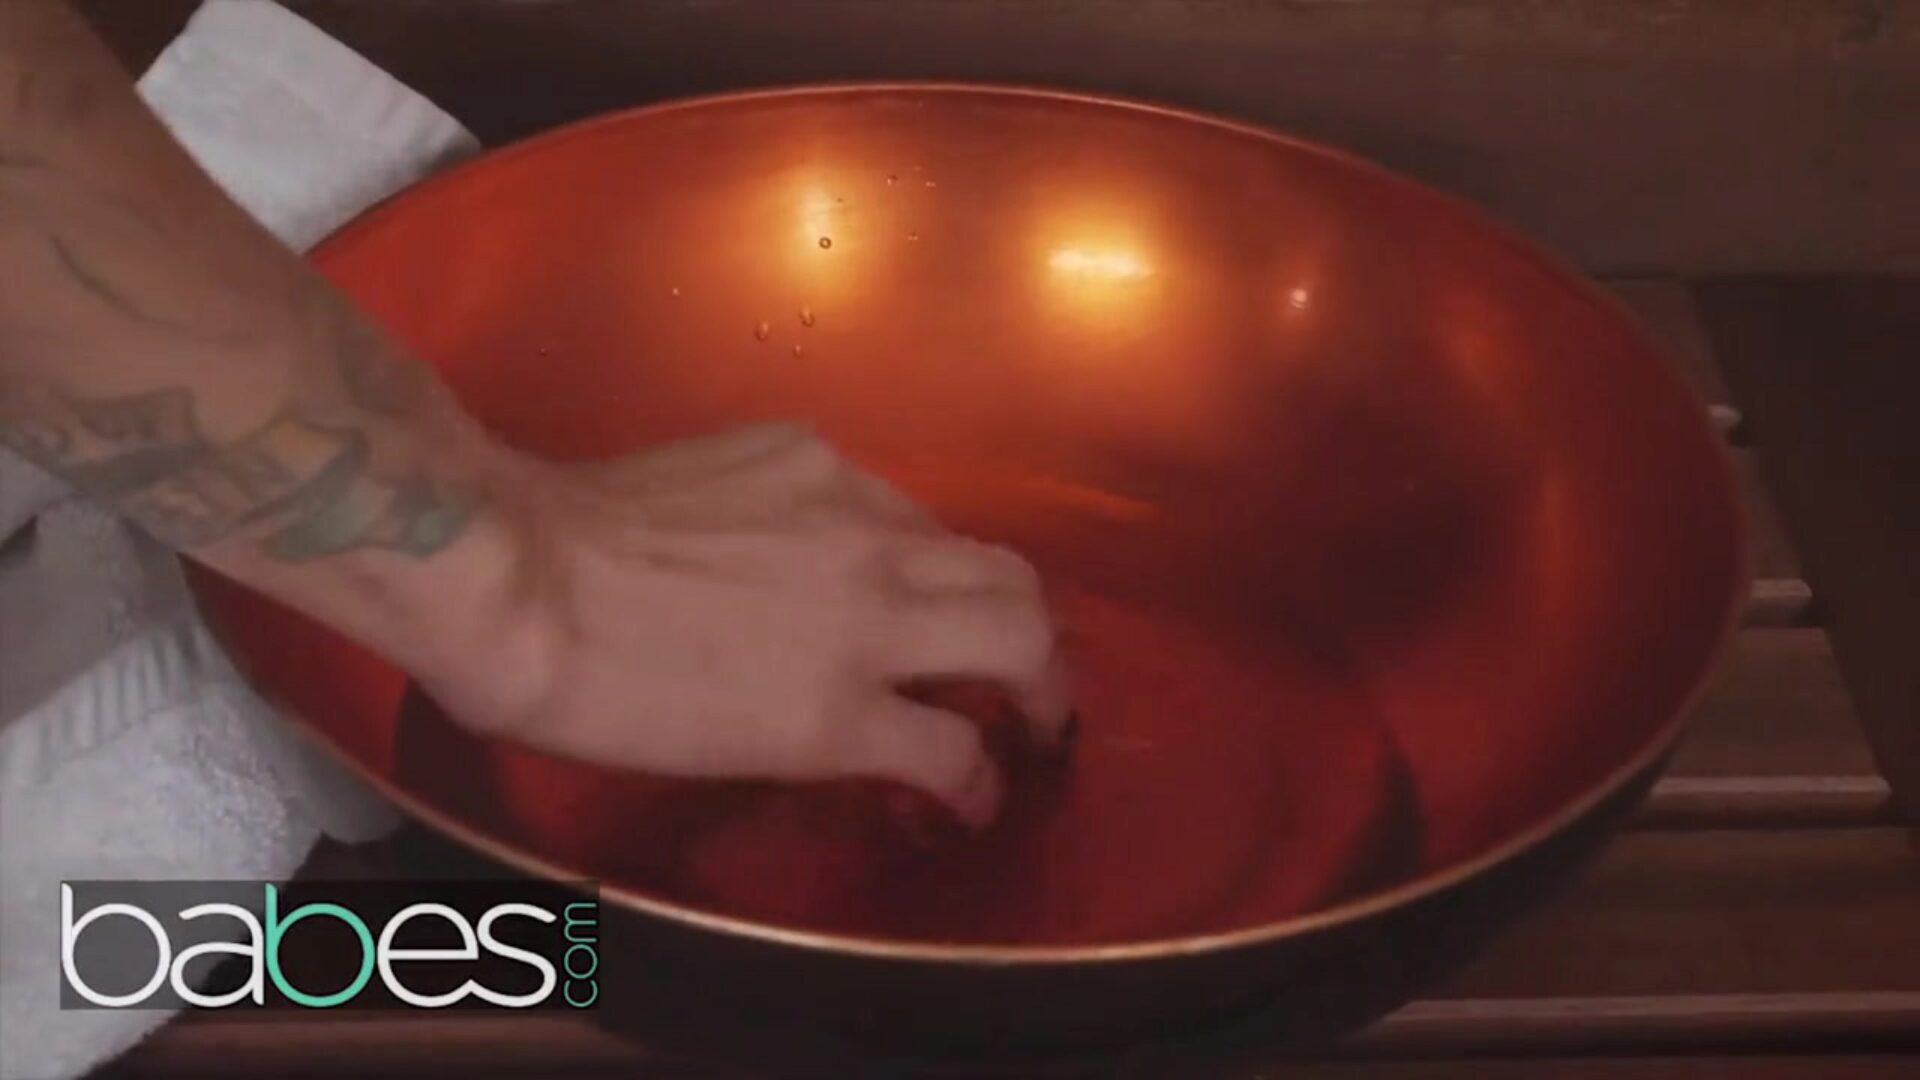 babes- büyük göt altın saçlı yetişkin film yıldızı jessa rhodes saunada rektal iç boşalma alır